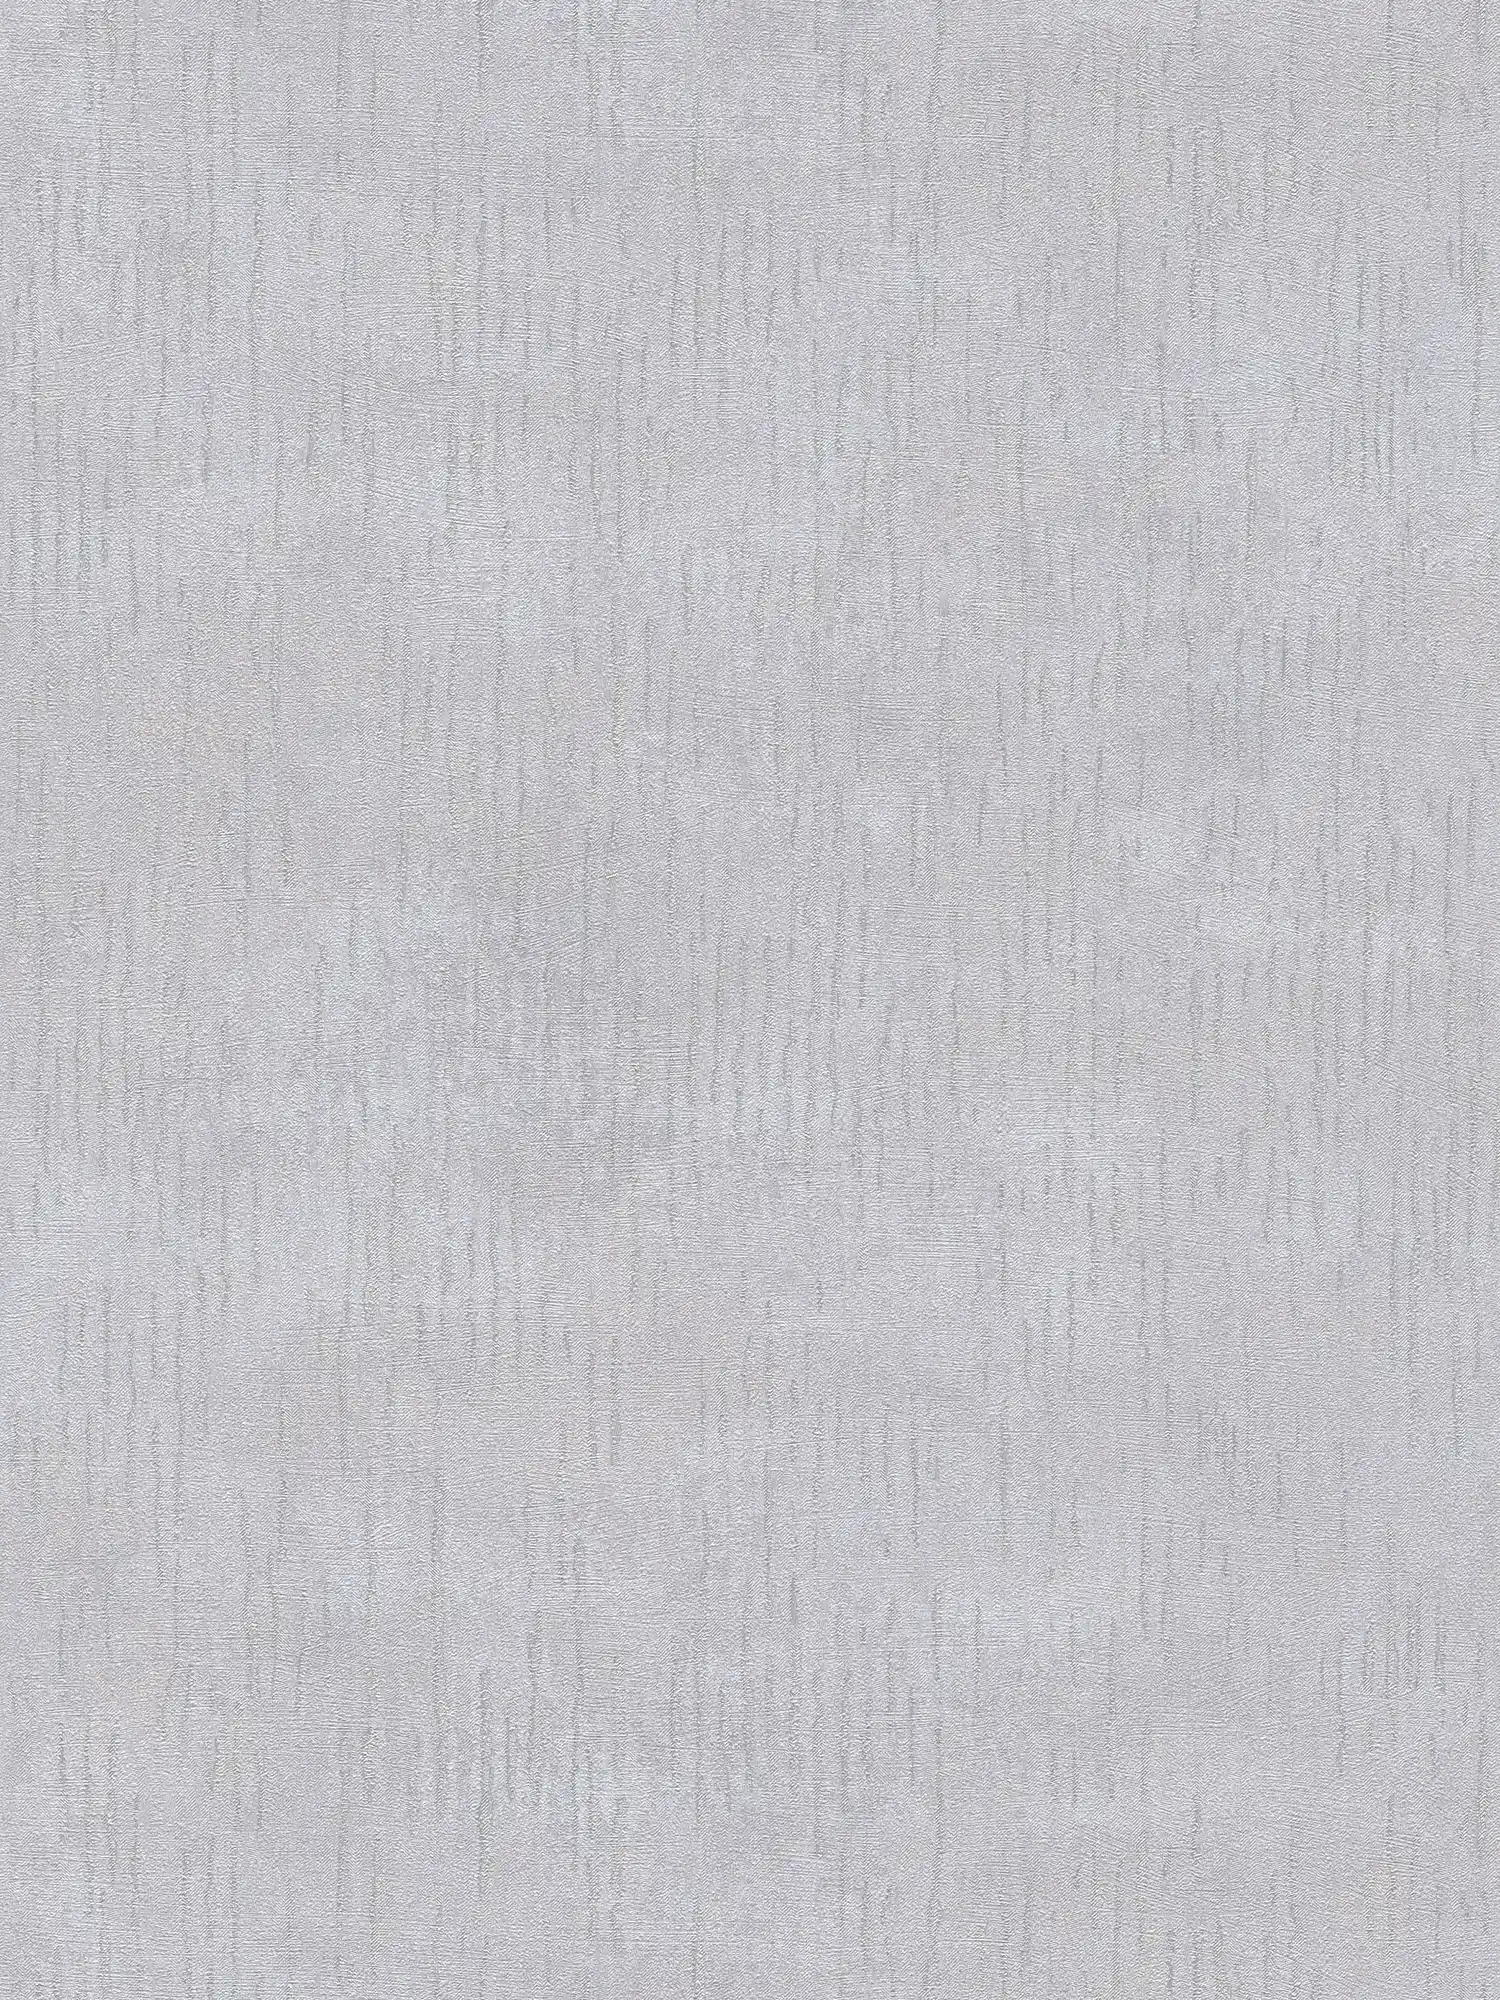 Gedessineerd glansbehang met structuurdesign - grijs, metallic
